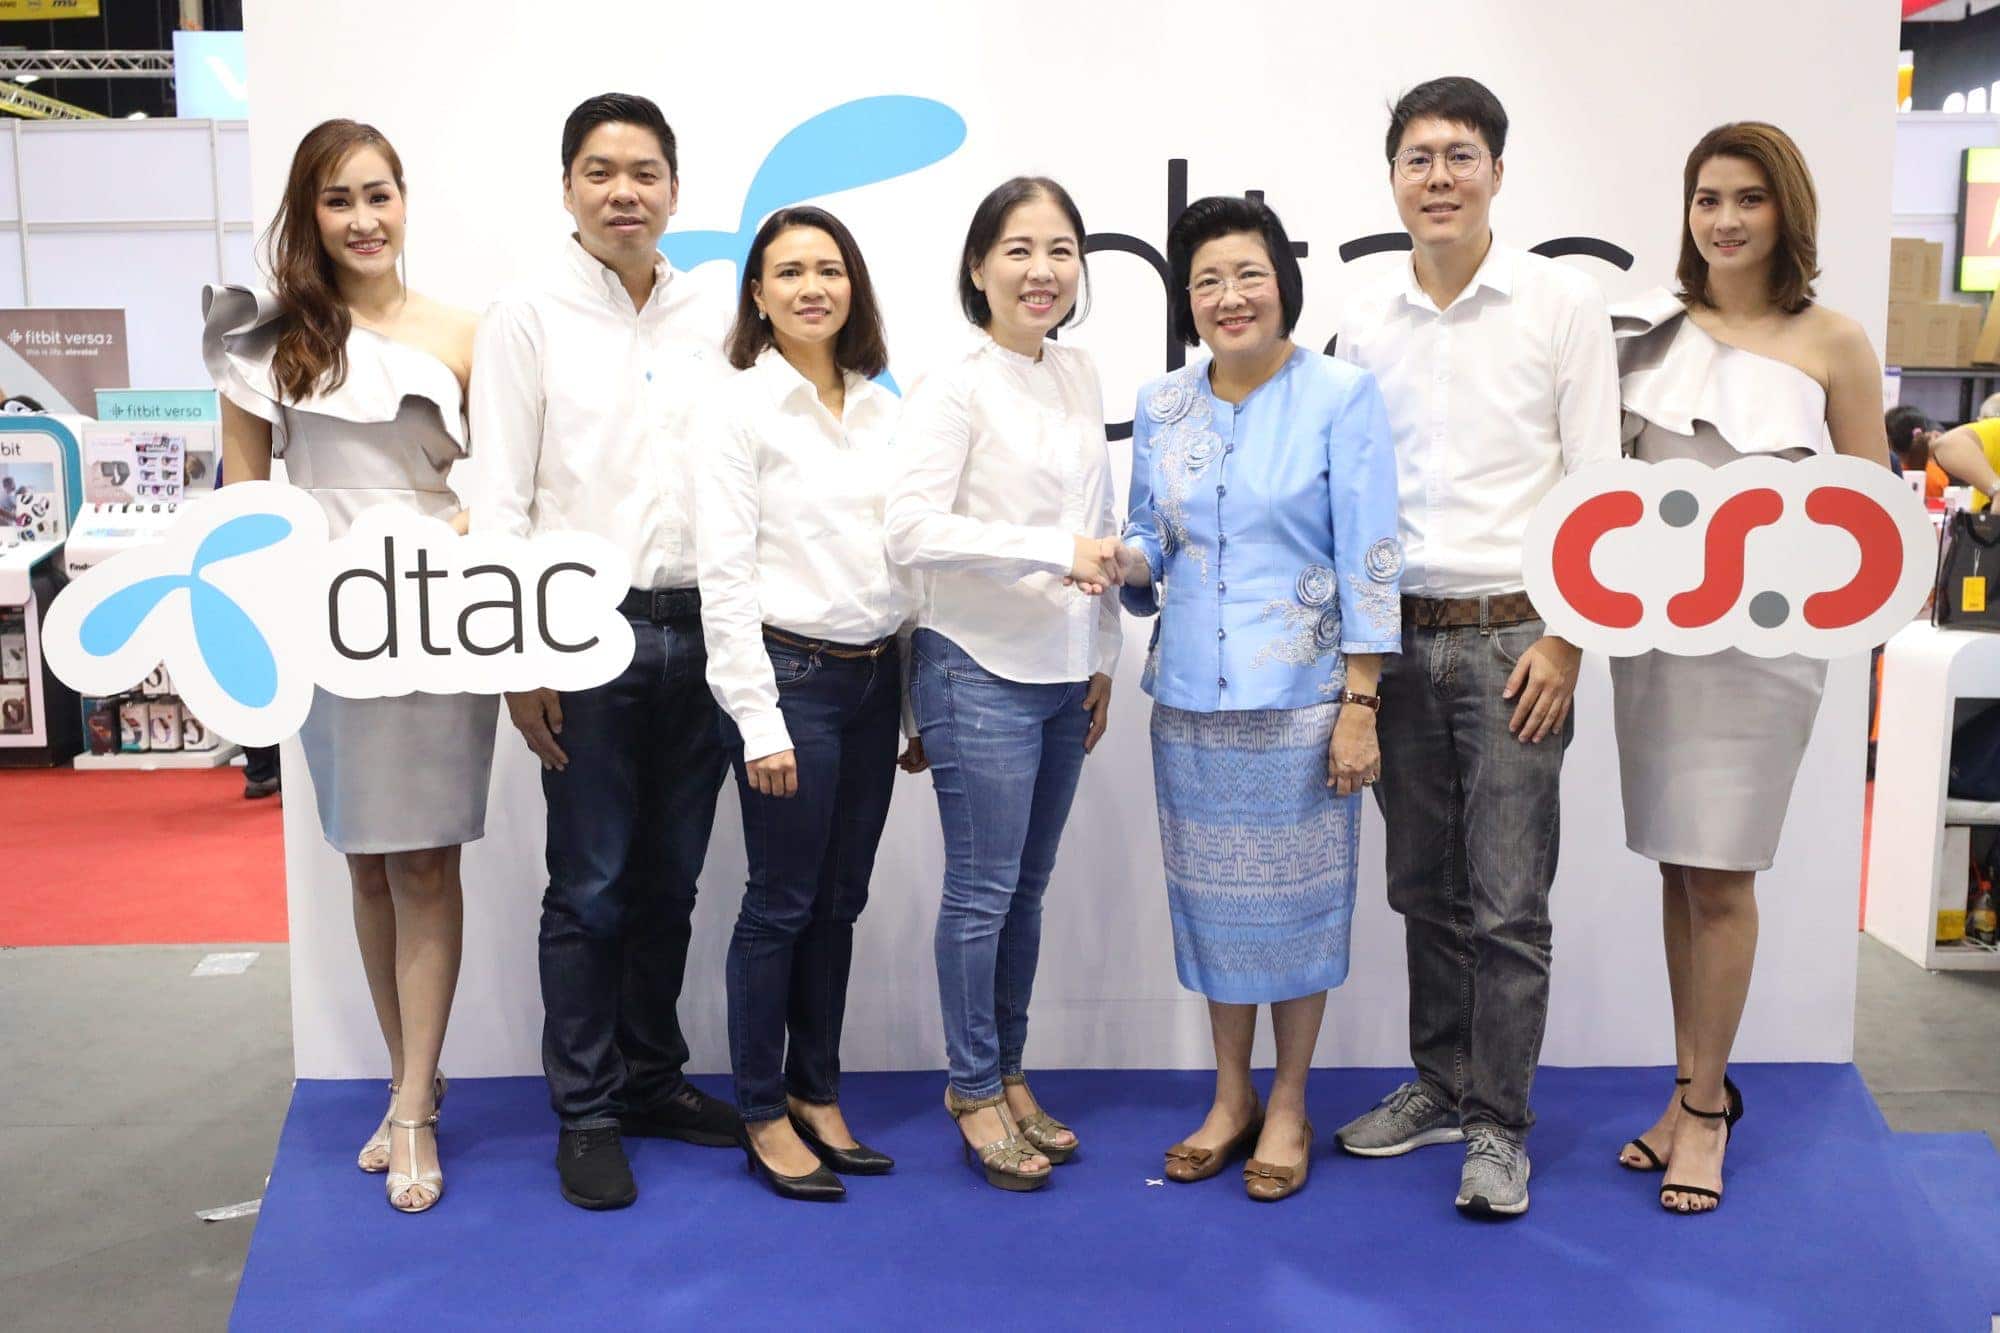 Dtac ปั๊มยอดขายไตรมาส 4 จับมือ CSC ผู้จำหน่ายมือถือรายใหญ่ท๊อป 4 ของไทย ในงาน Thailand Mobile Expo 2019 9